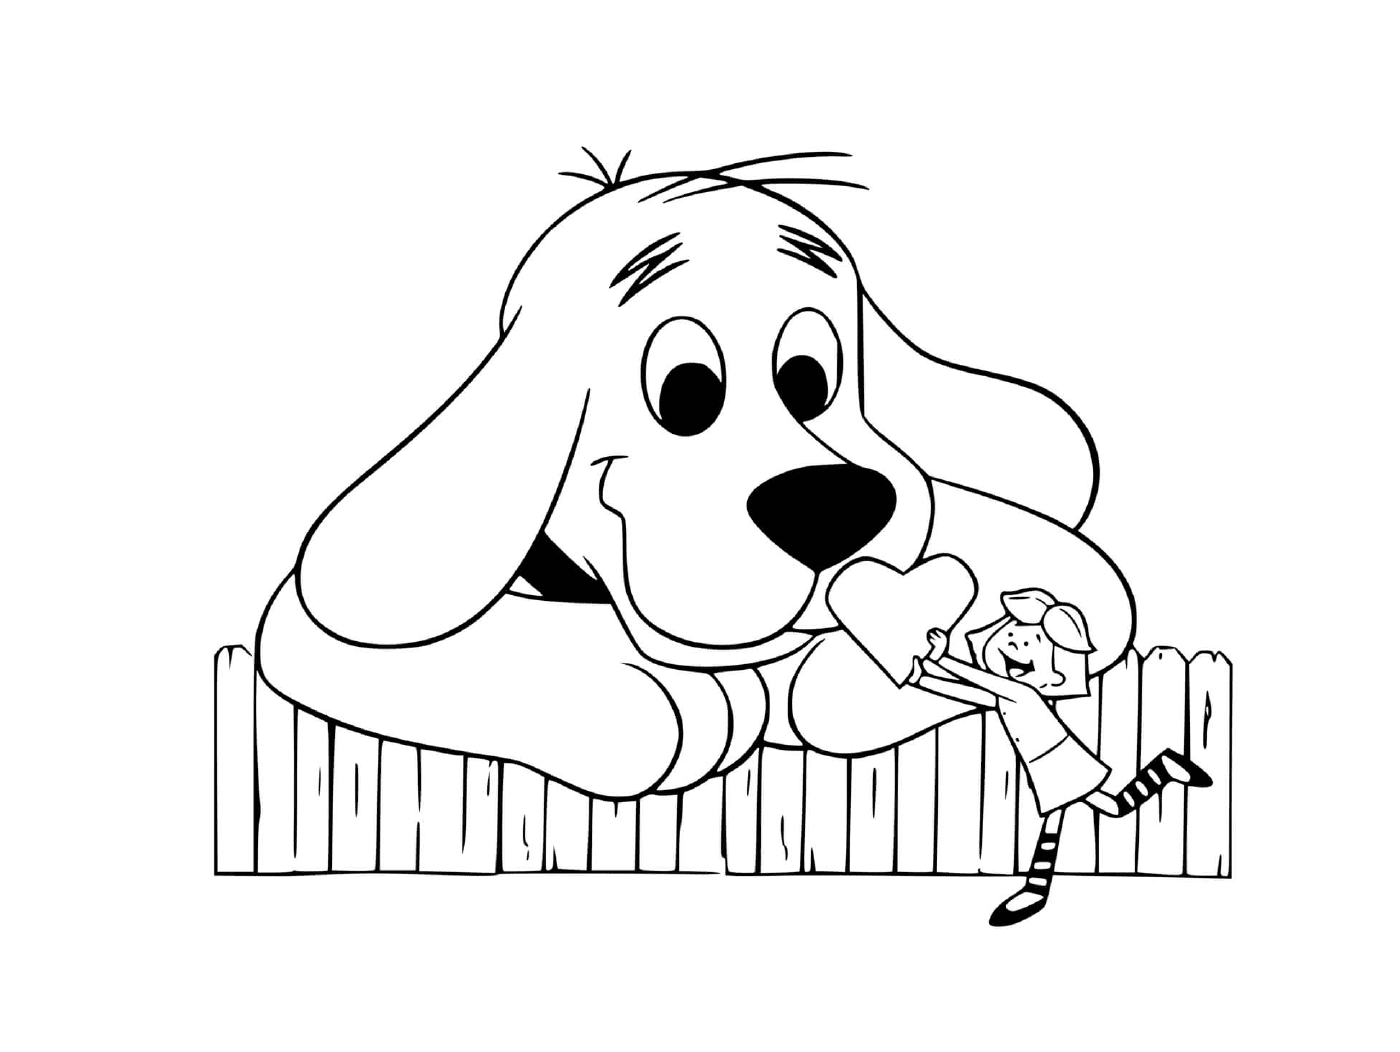  Эмили даёт сердце своему любимому животному, Клиффорду, красному псу 